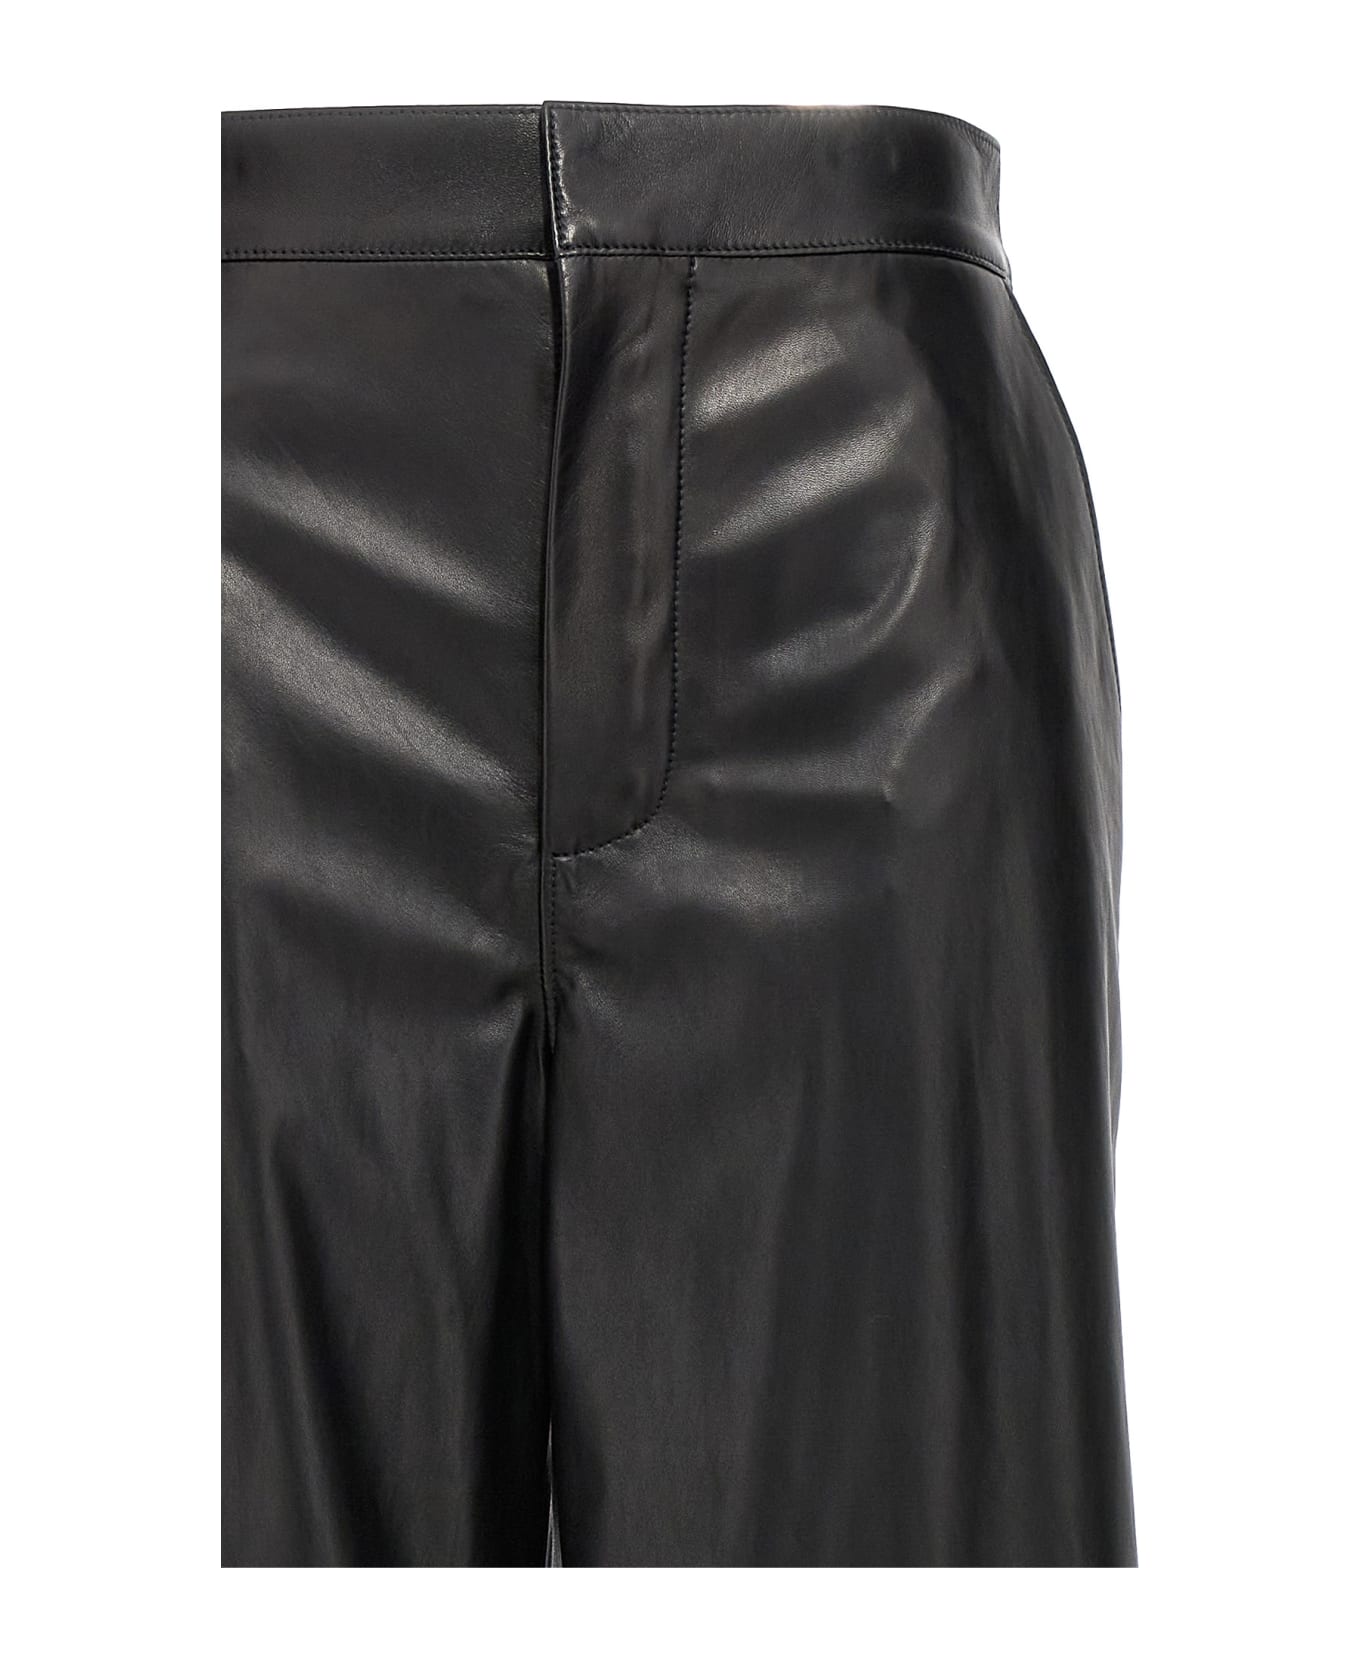 Loewe 'anagram' Baggy Trousers - Black  